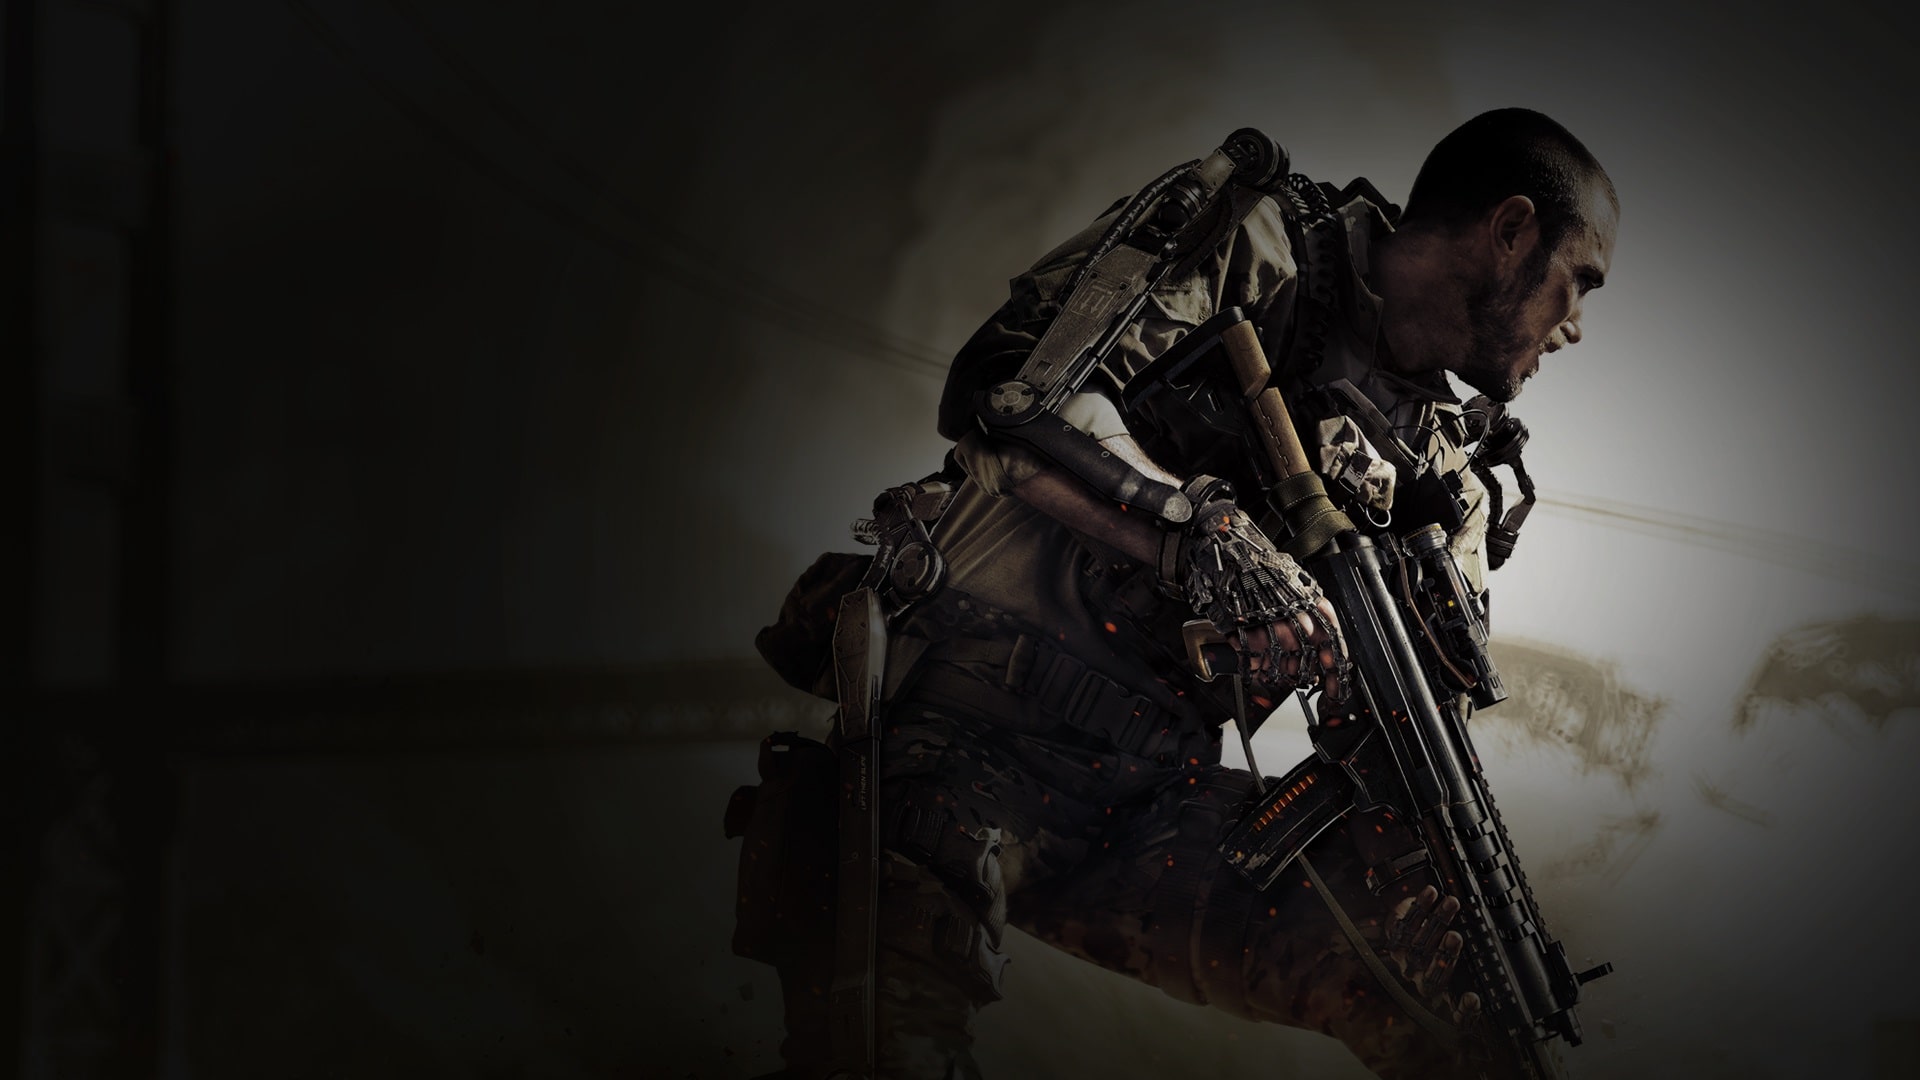 Call of Duty:Advanced Warfare - Digital Pro Edition (Day Zero)